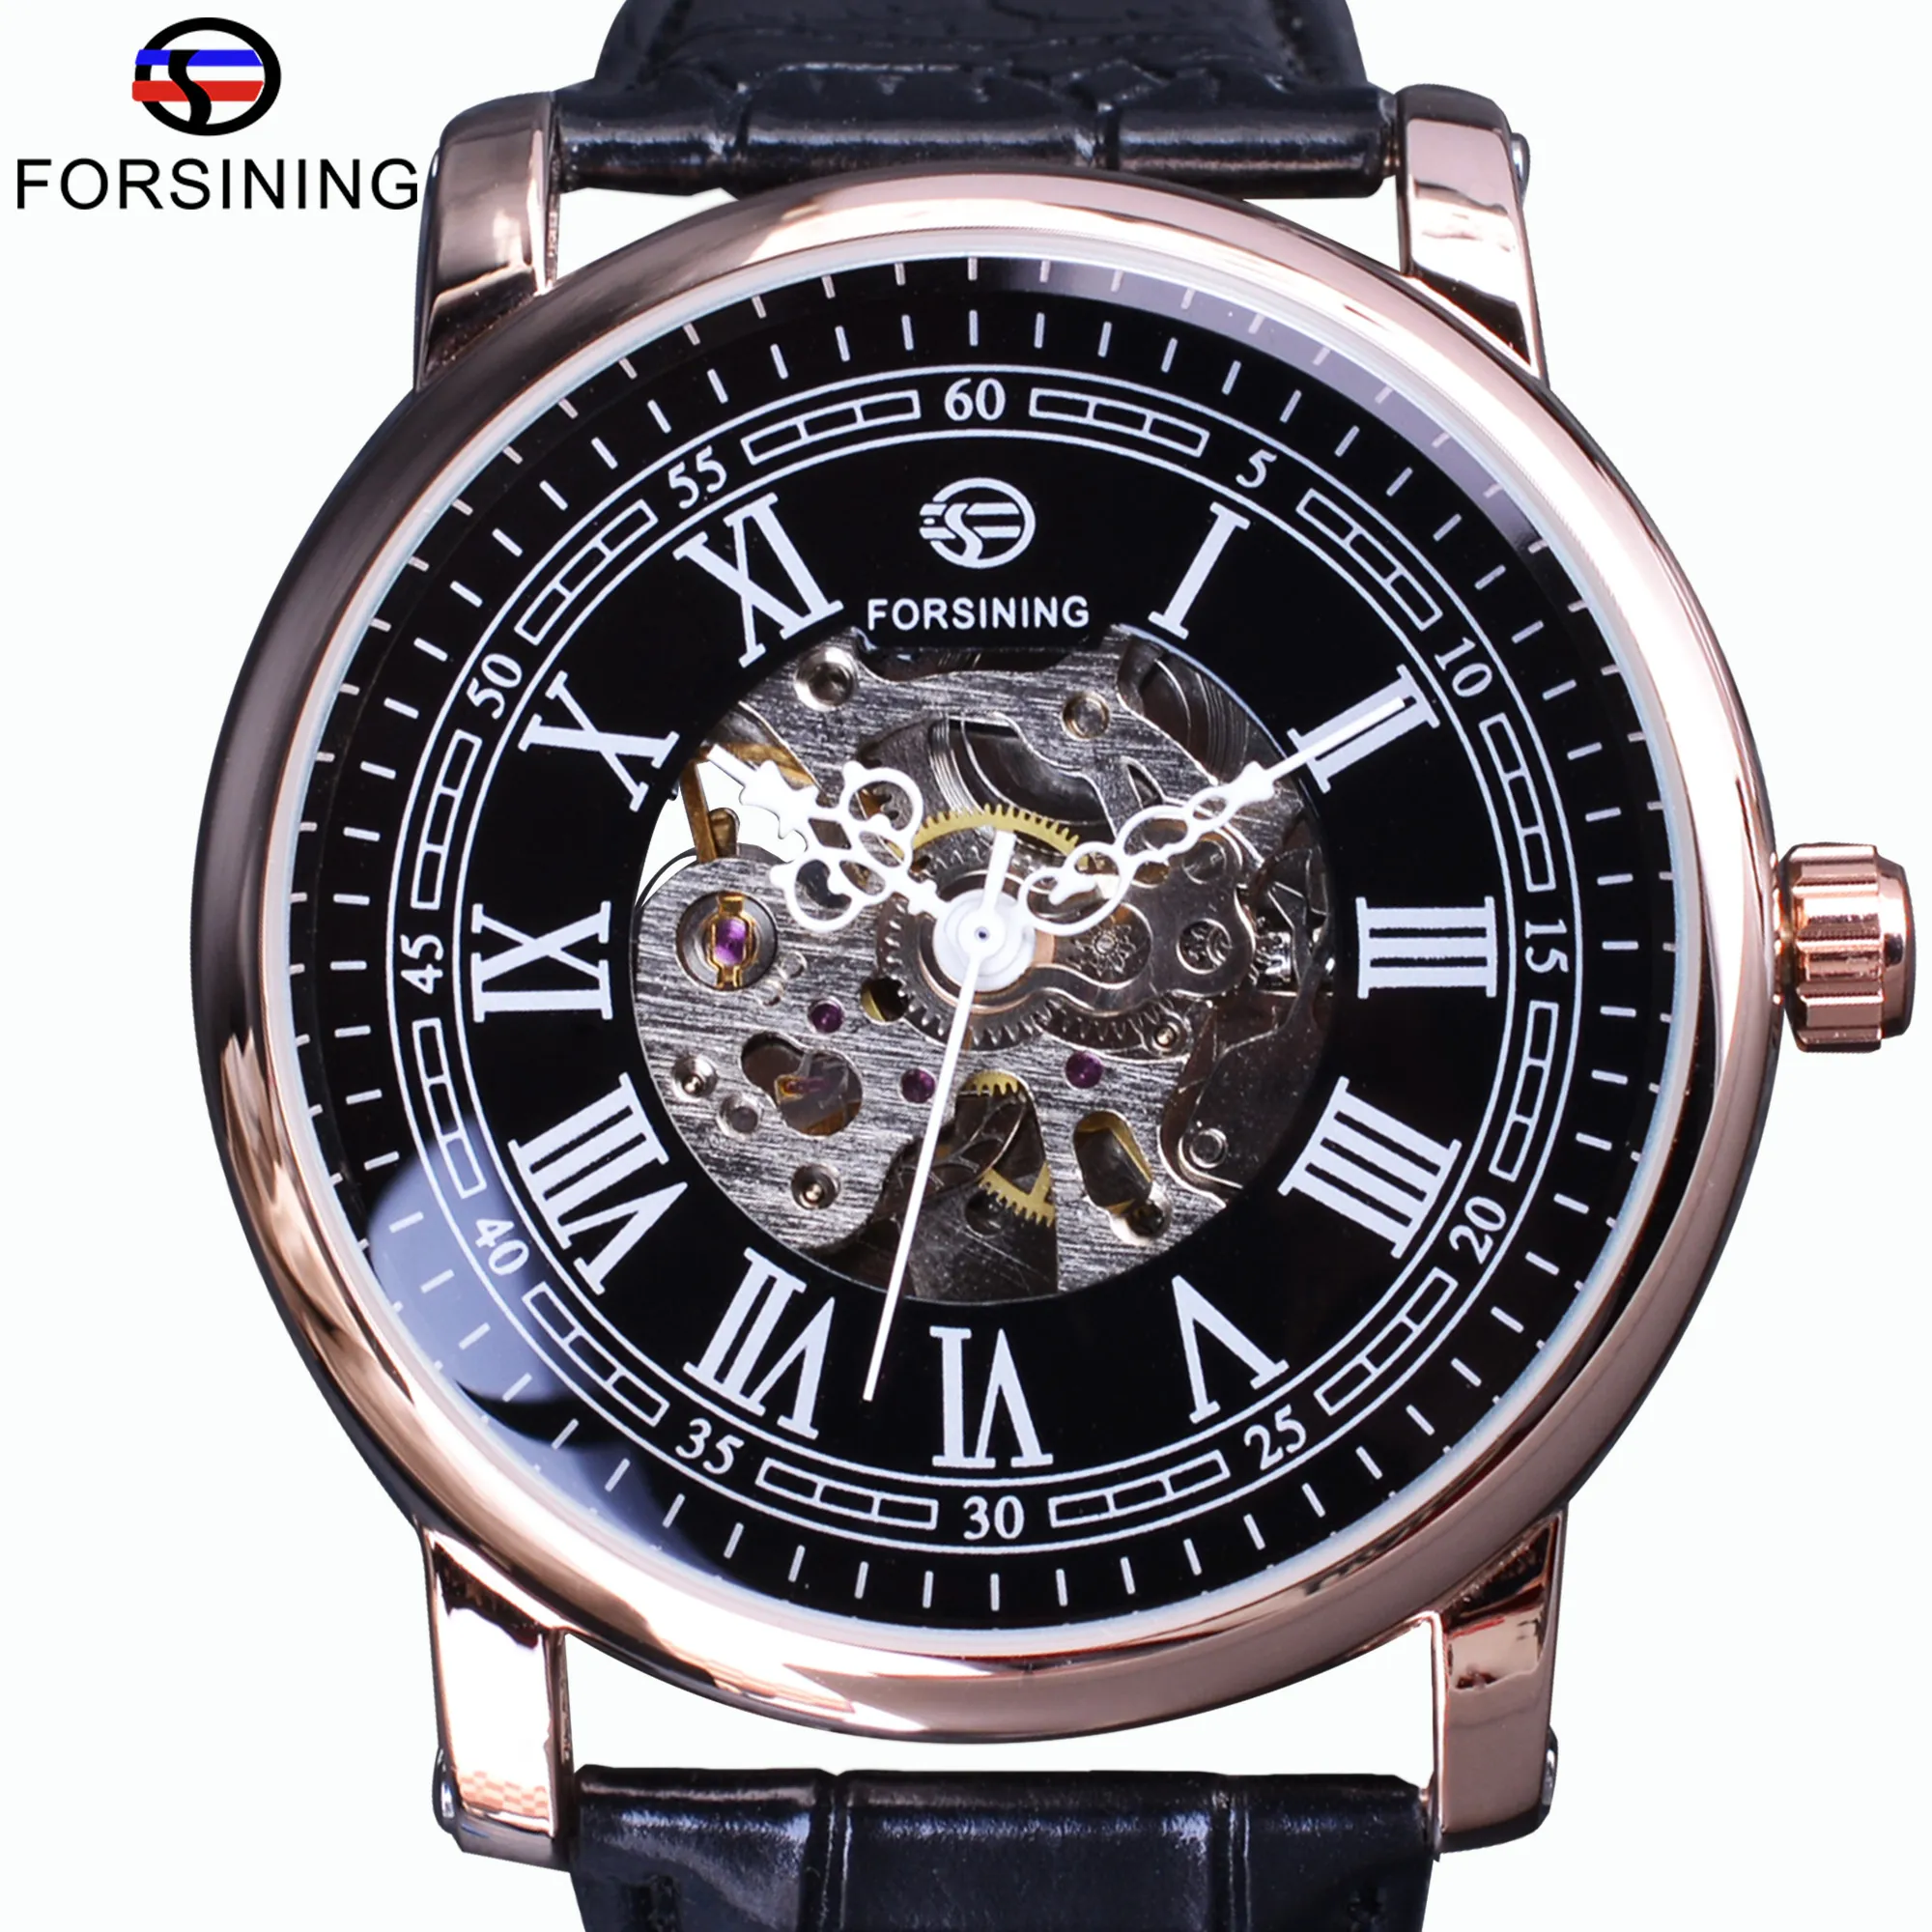 Forsining Retro Series Watch R￶misches Skelett Display schwarzes Zifferblatt mechanische Uhr Ros￩goldene H￼lle Automatische Uhr Top Marke Luxus